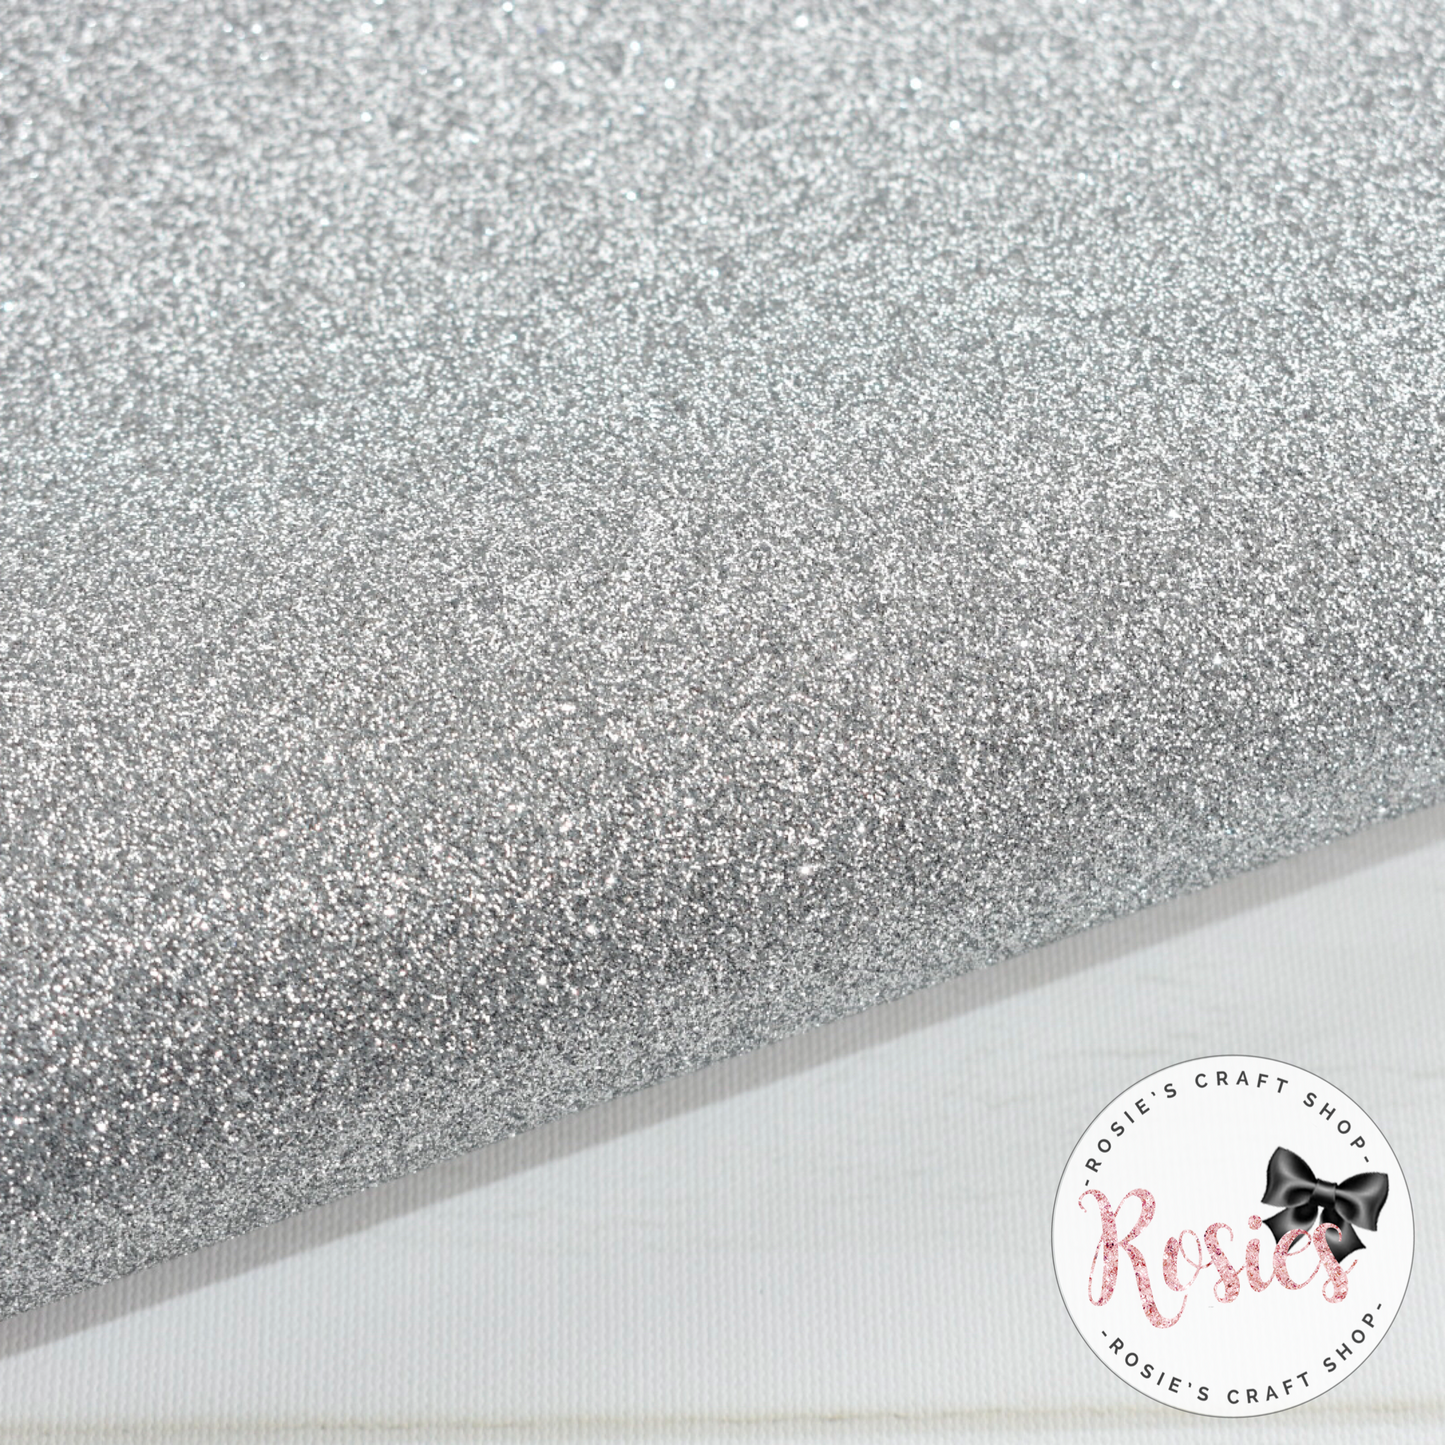 Silver Premium Fine Glitter Topped Wool Felt - Rosie's Craft Shop Ltd